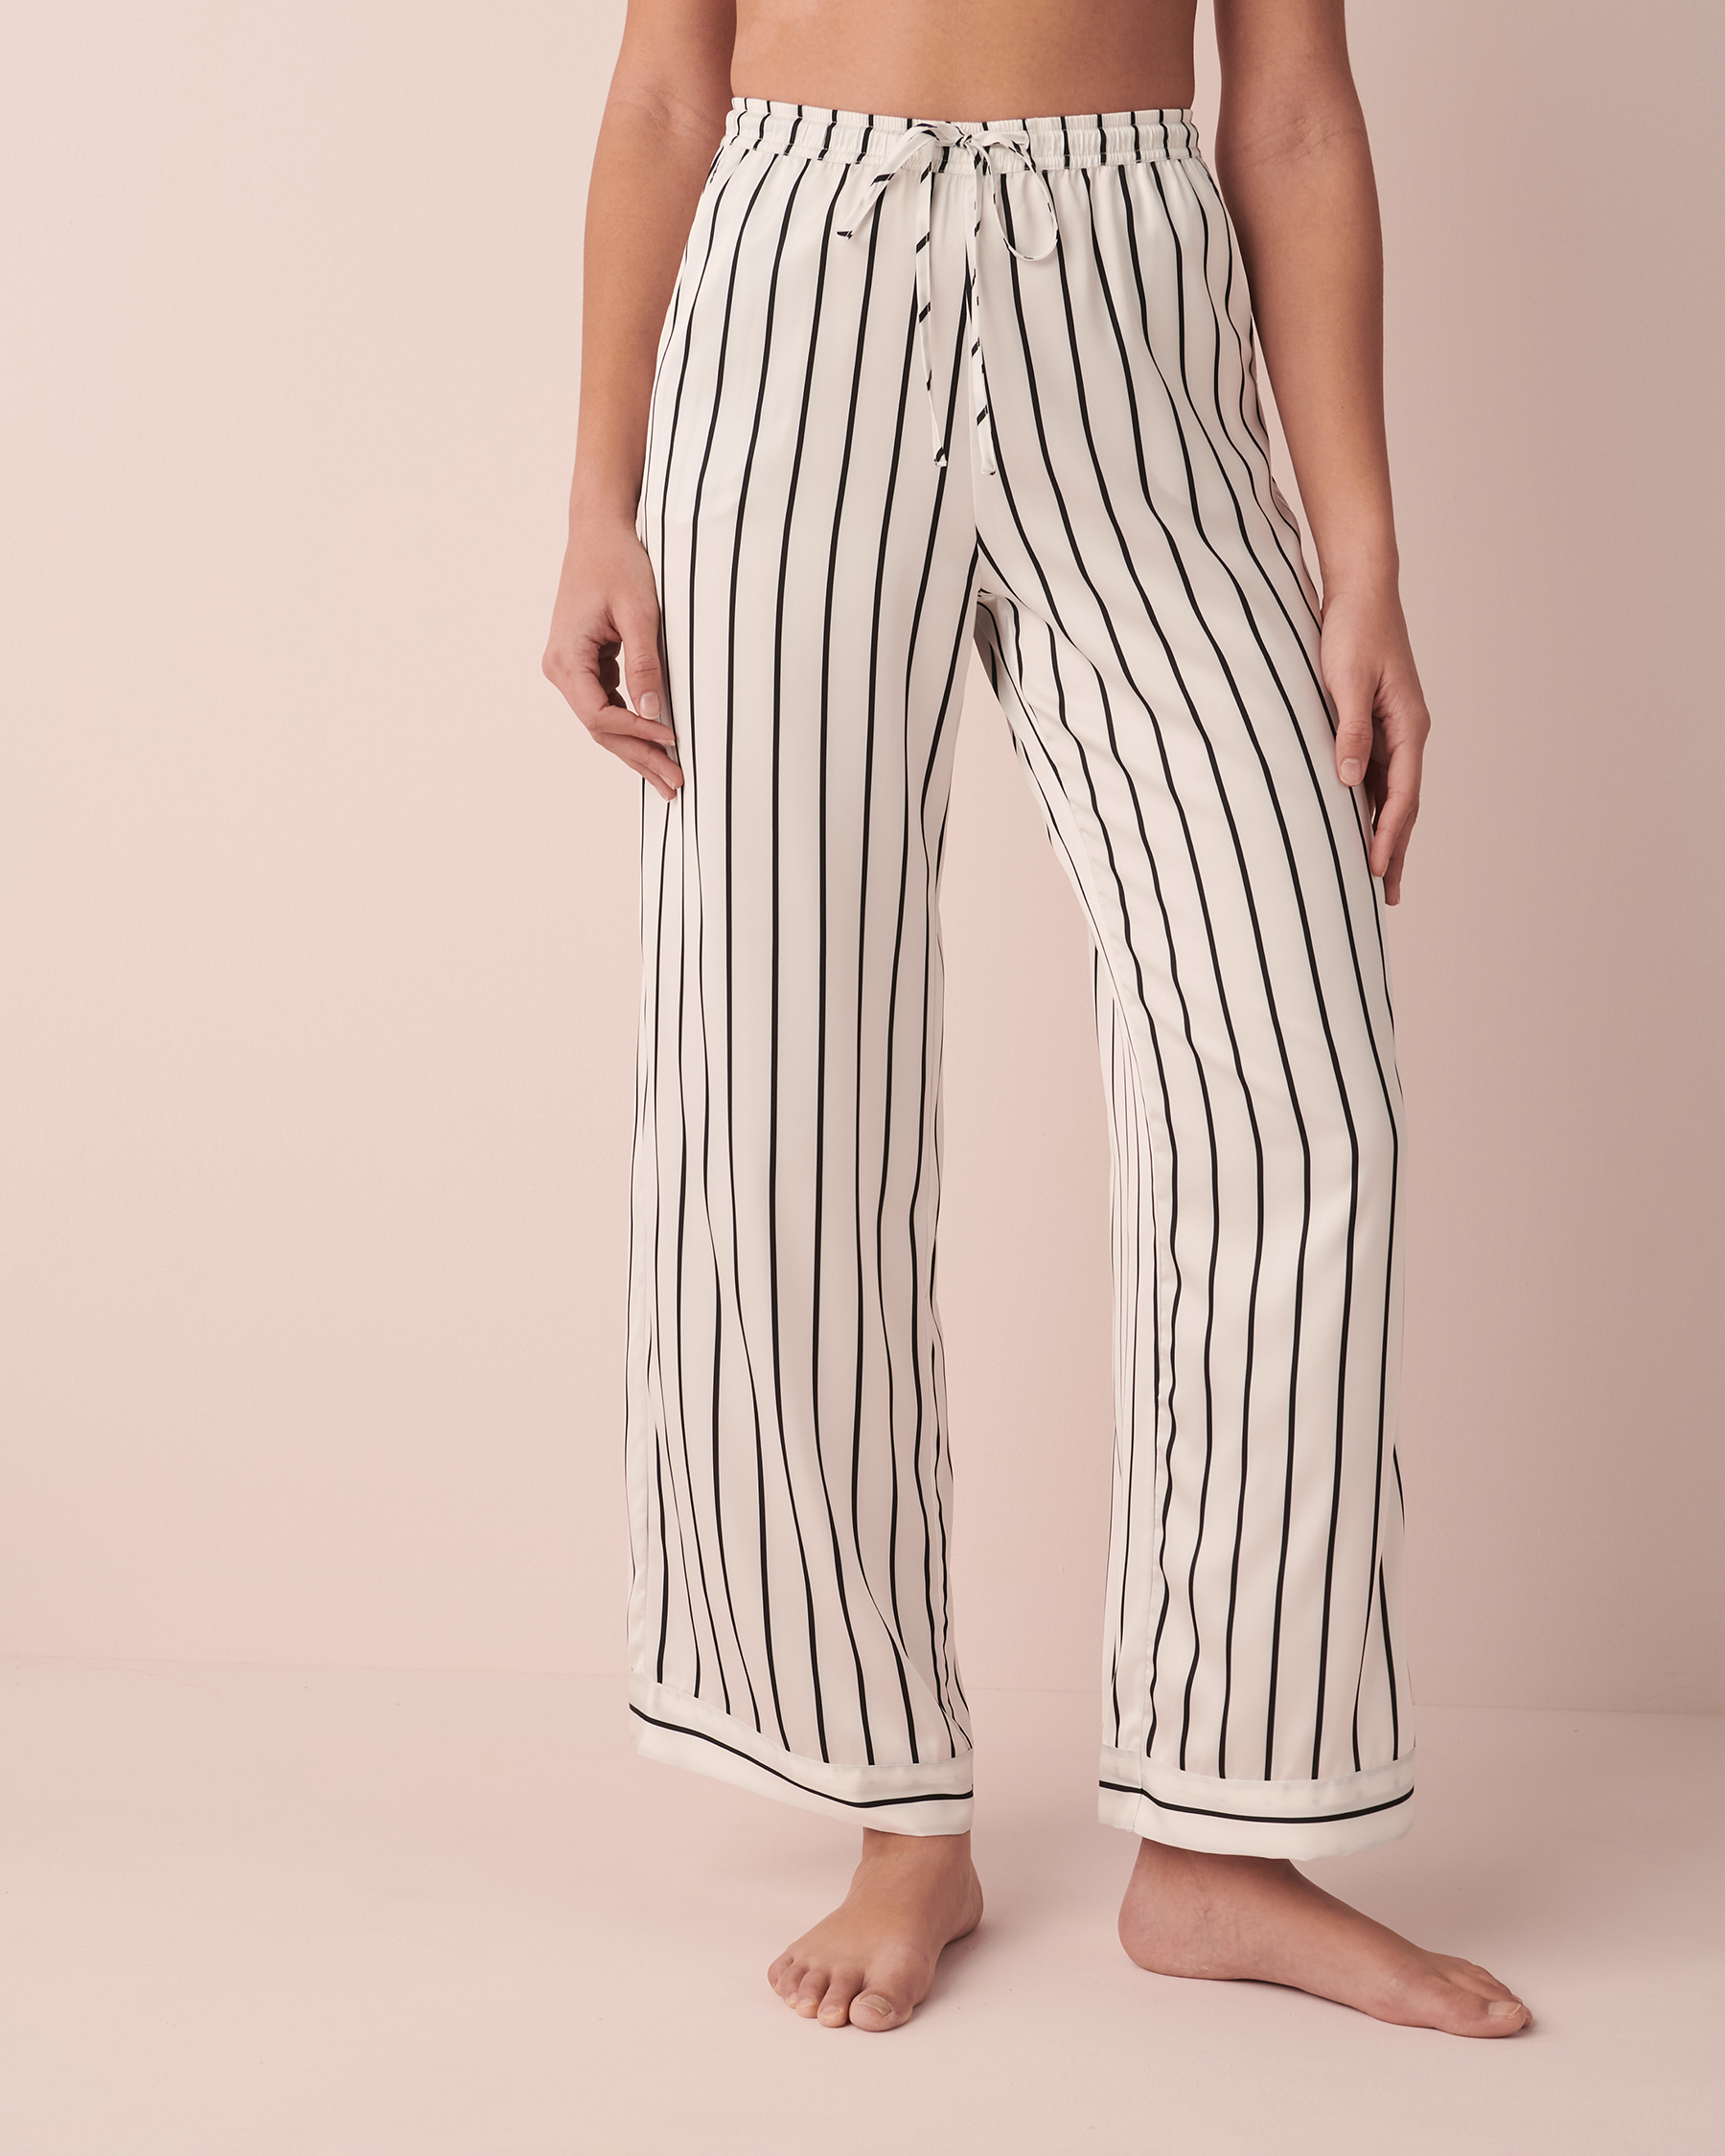 LA VIE EN ROSE Striped Satin Pants Black and white stripe 60200058 - View3